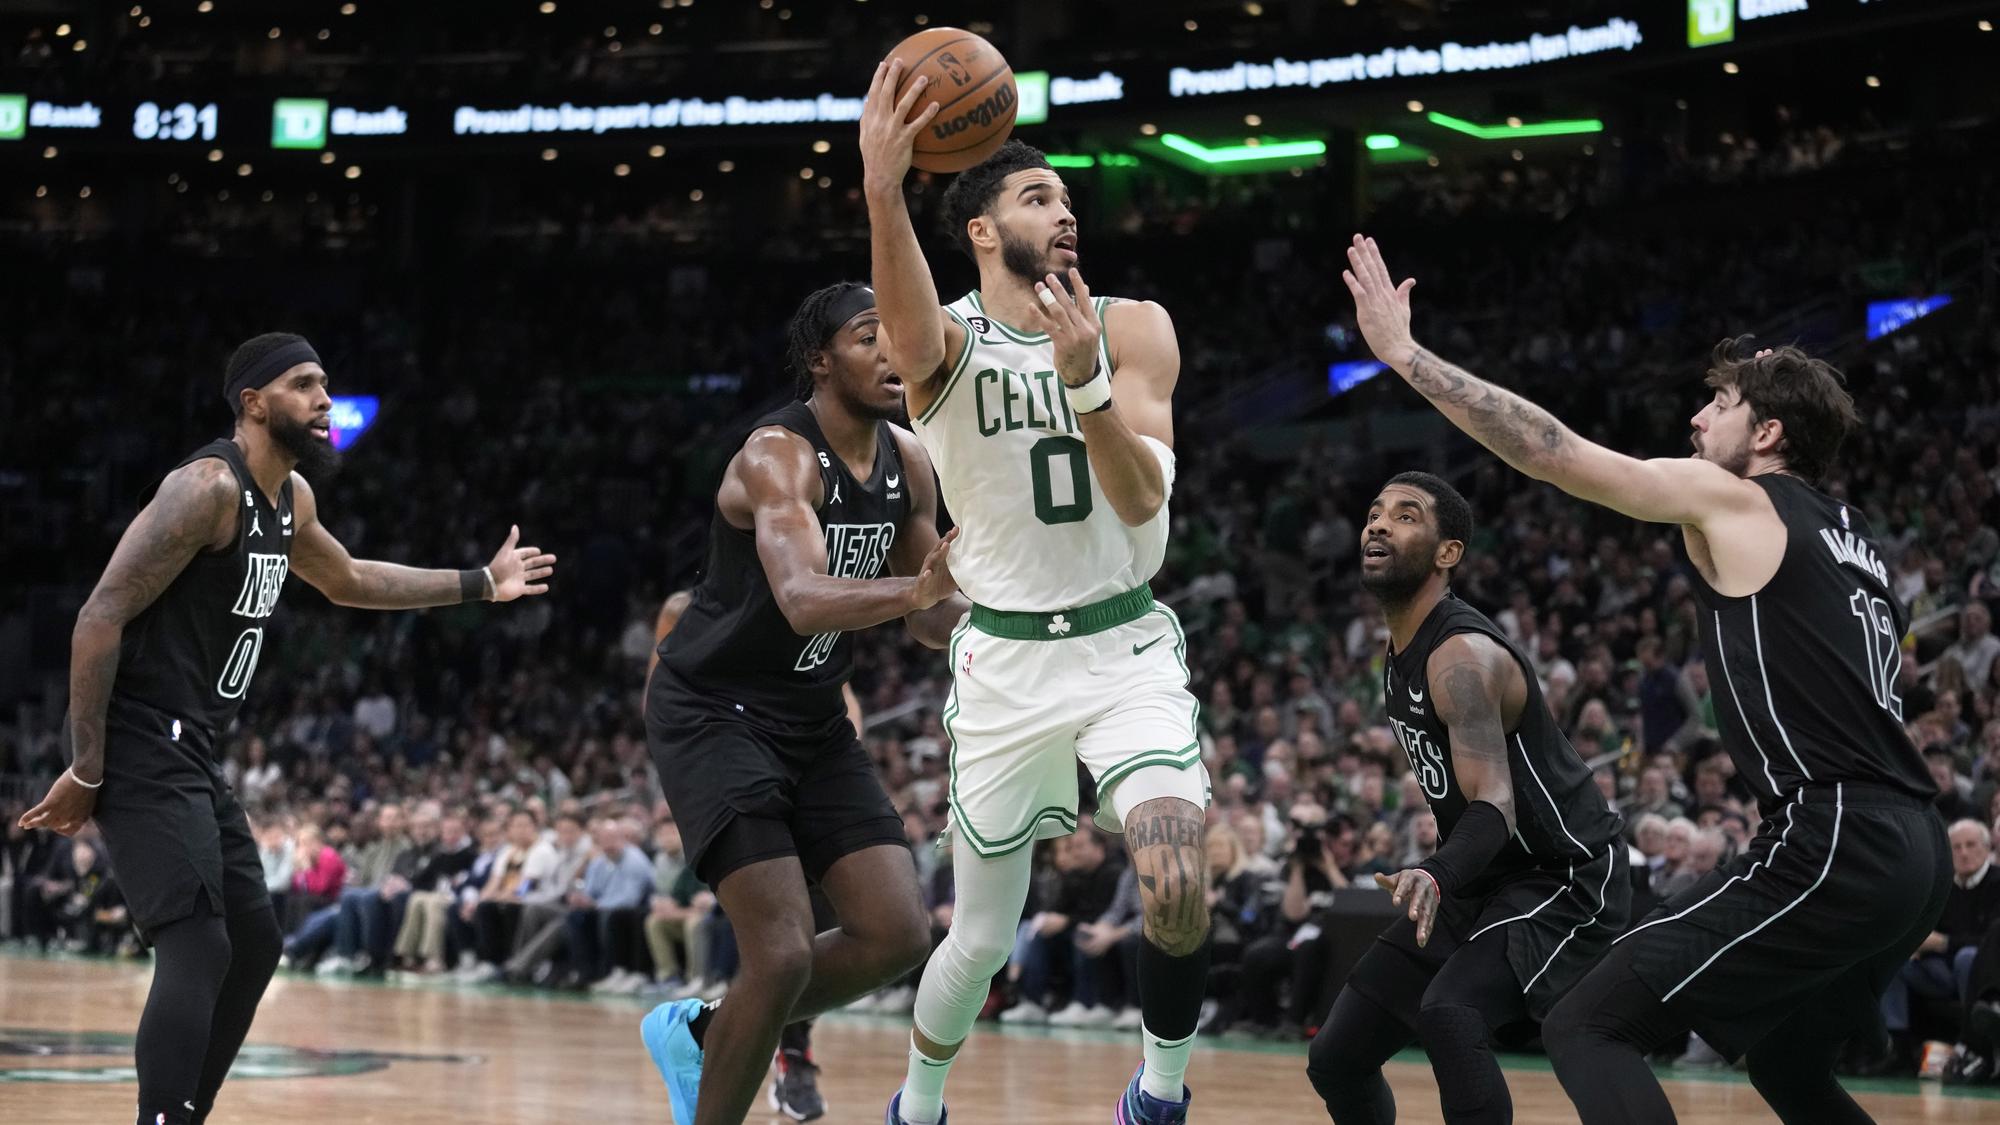 VIDEO: NBA: Brooklyn nemal nárok. Celtics zvíťazili o viac ako 40 bodov